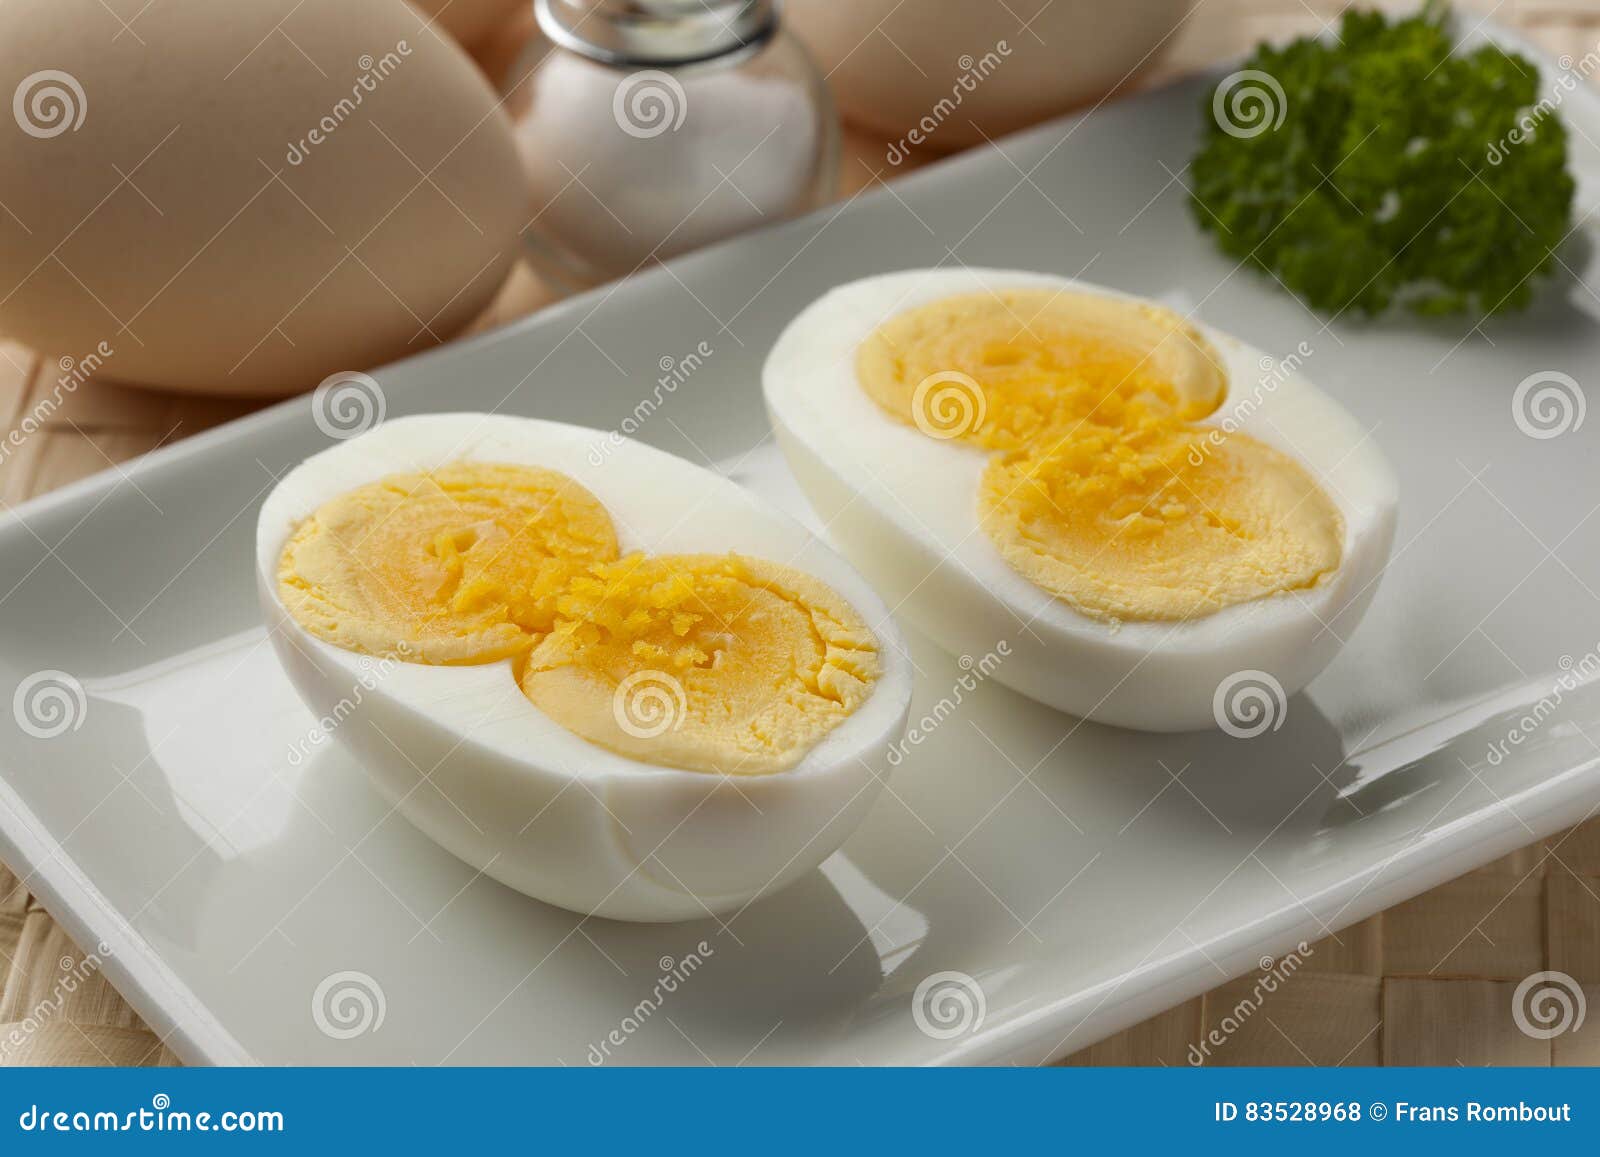 cooked double yolk egg